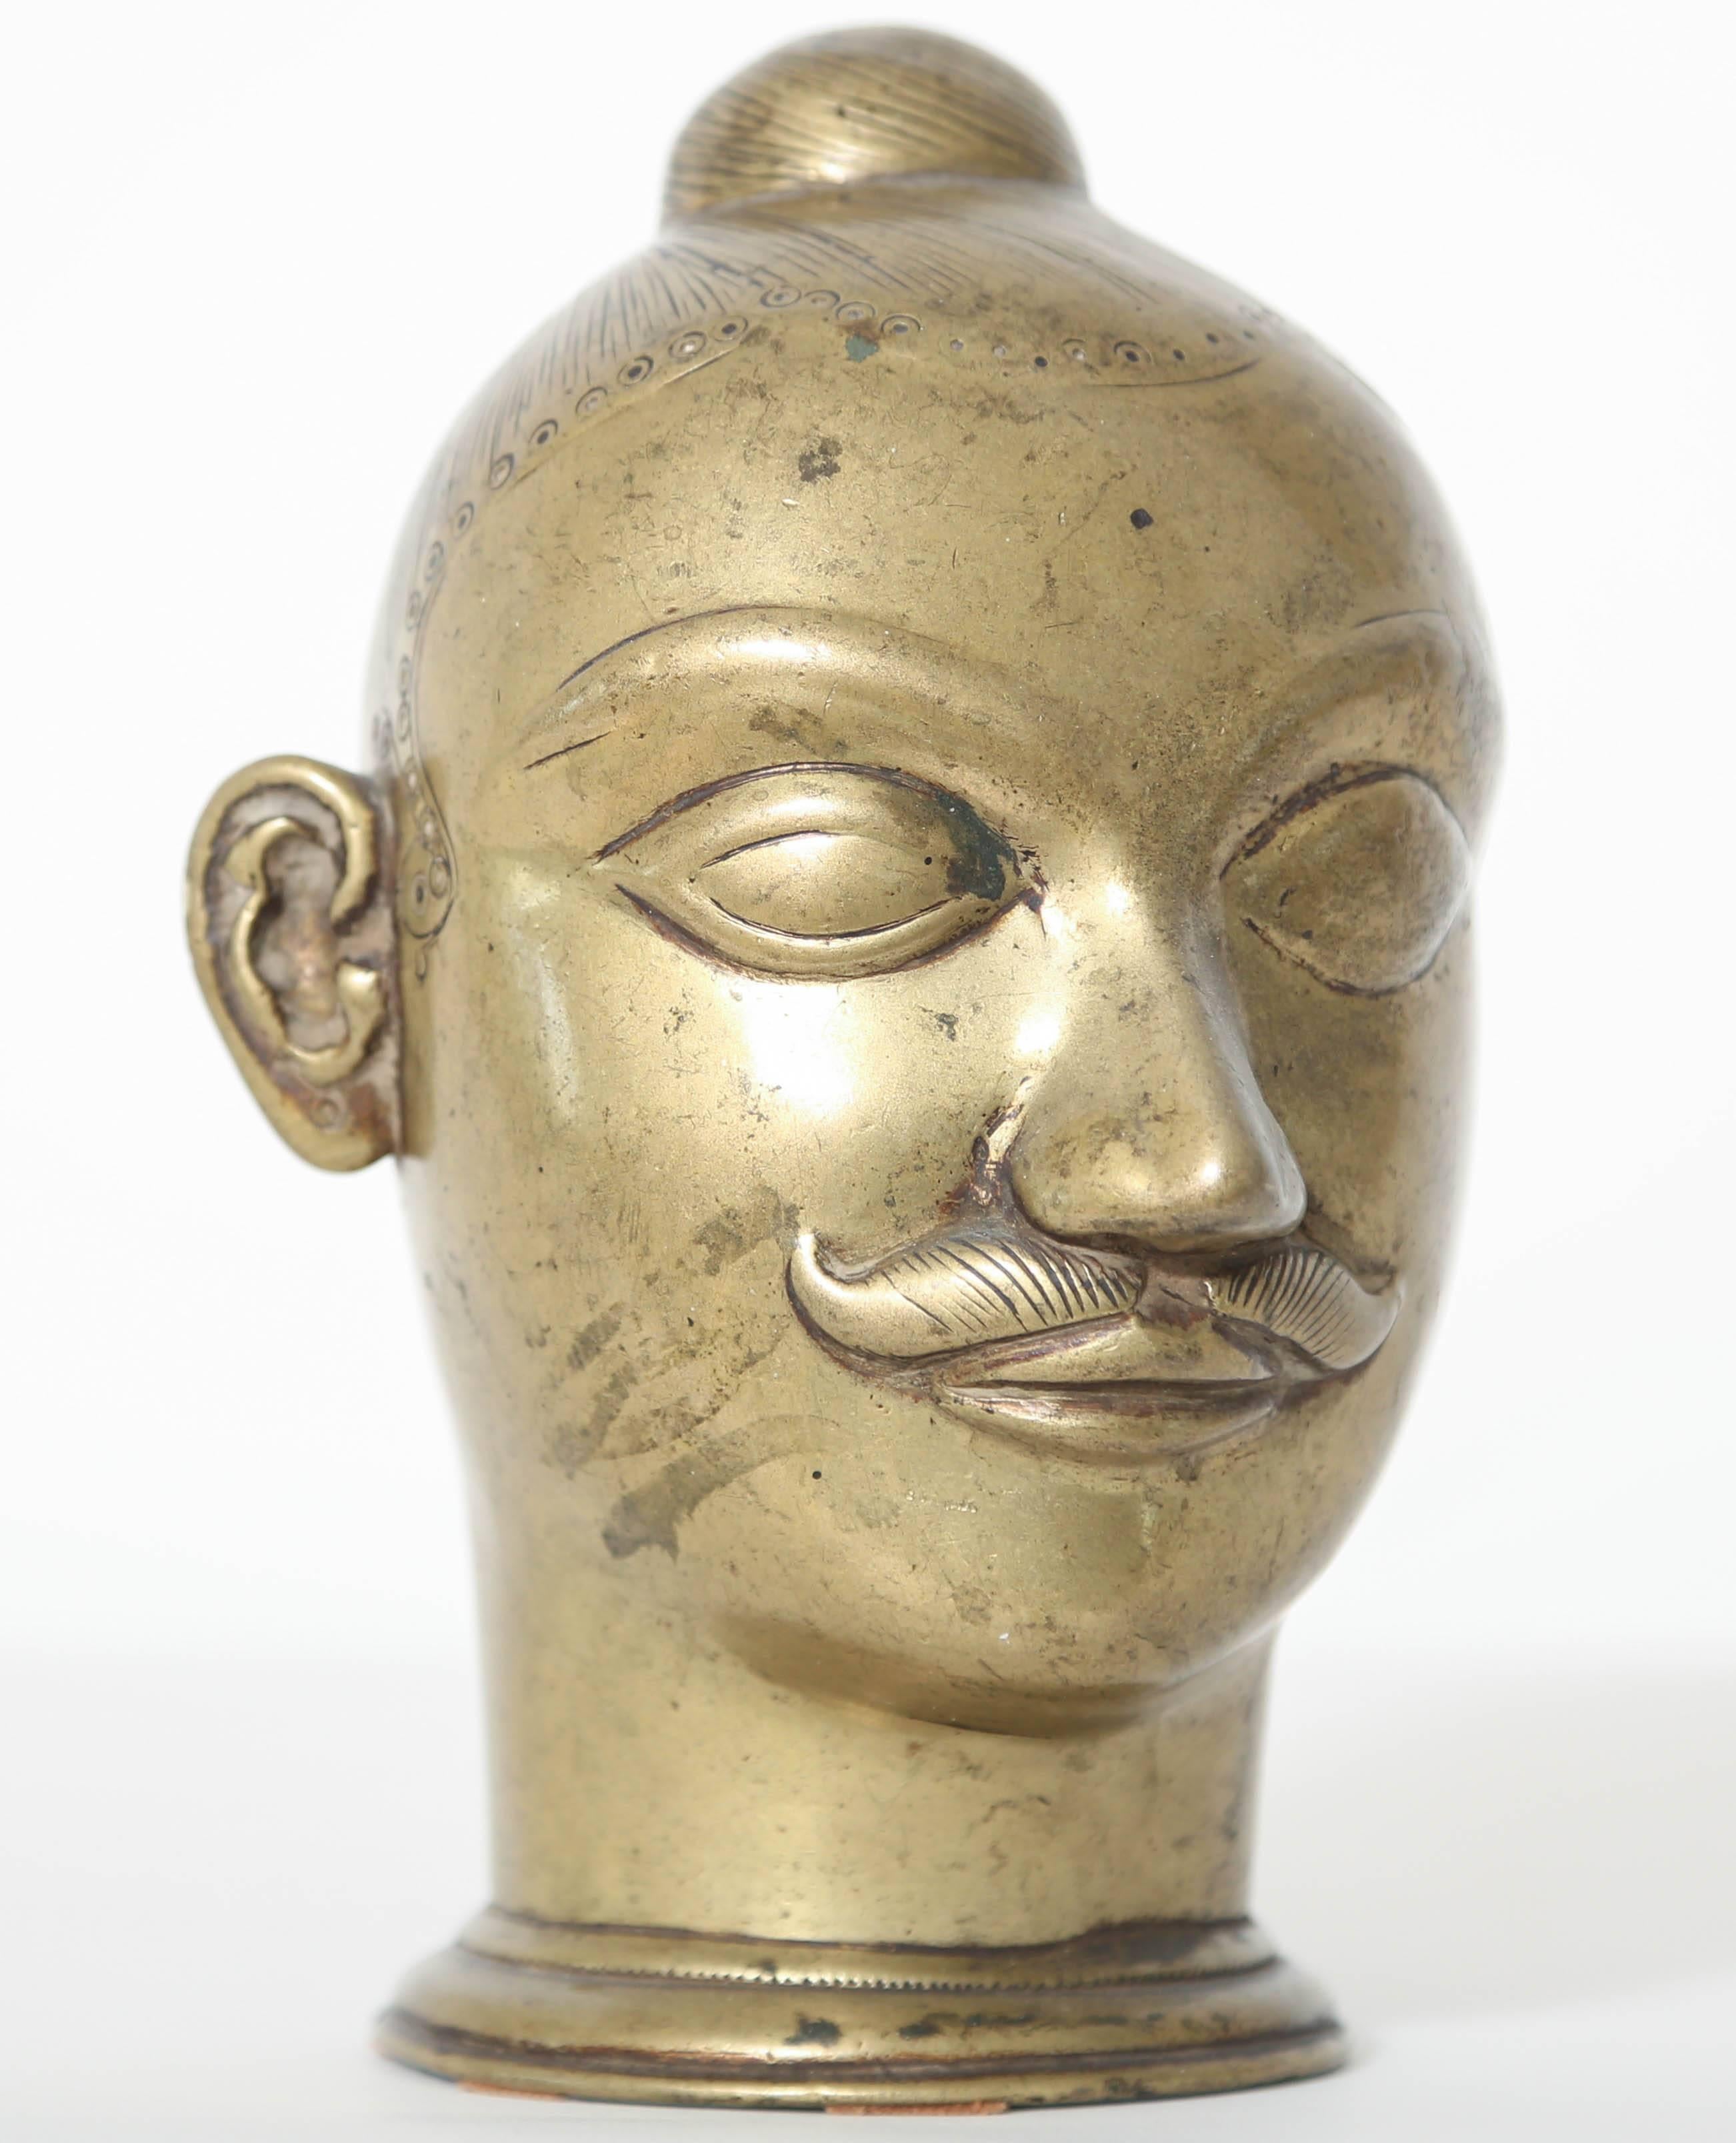 Cette tête moustachue en laiton, aux cheveux incisés en chignon serré, était destinée à recouvrir un lingam sacré, symbole de l'énergie de Dieu, vénéré dans toute l'Inde. Ce bel exemple provient de l'Inde occidentale, probablement du Maharashtra, du